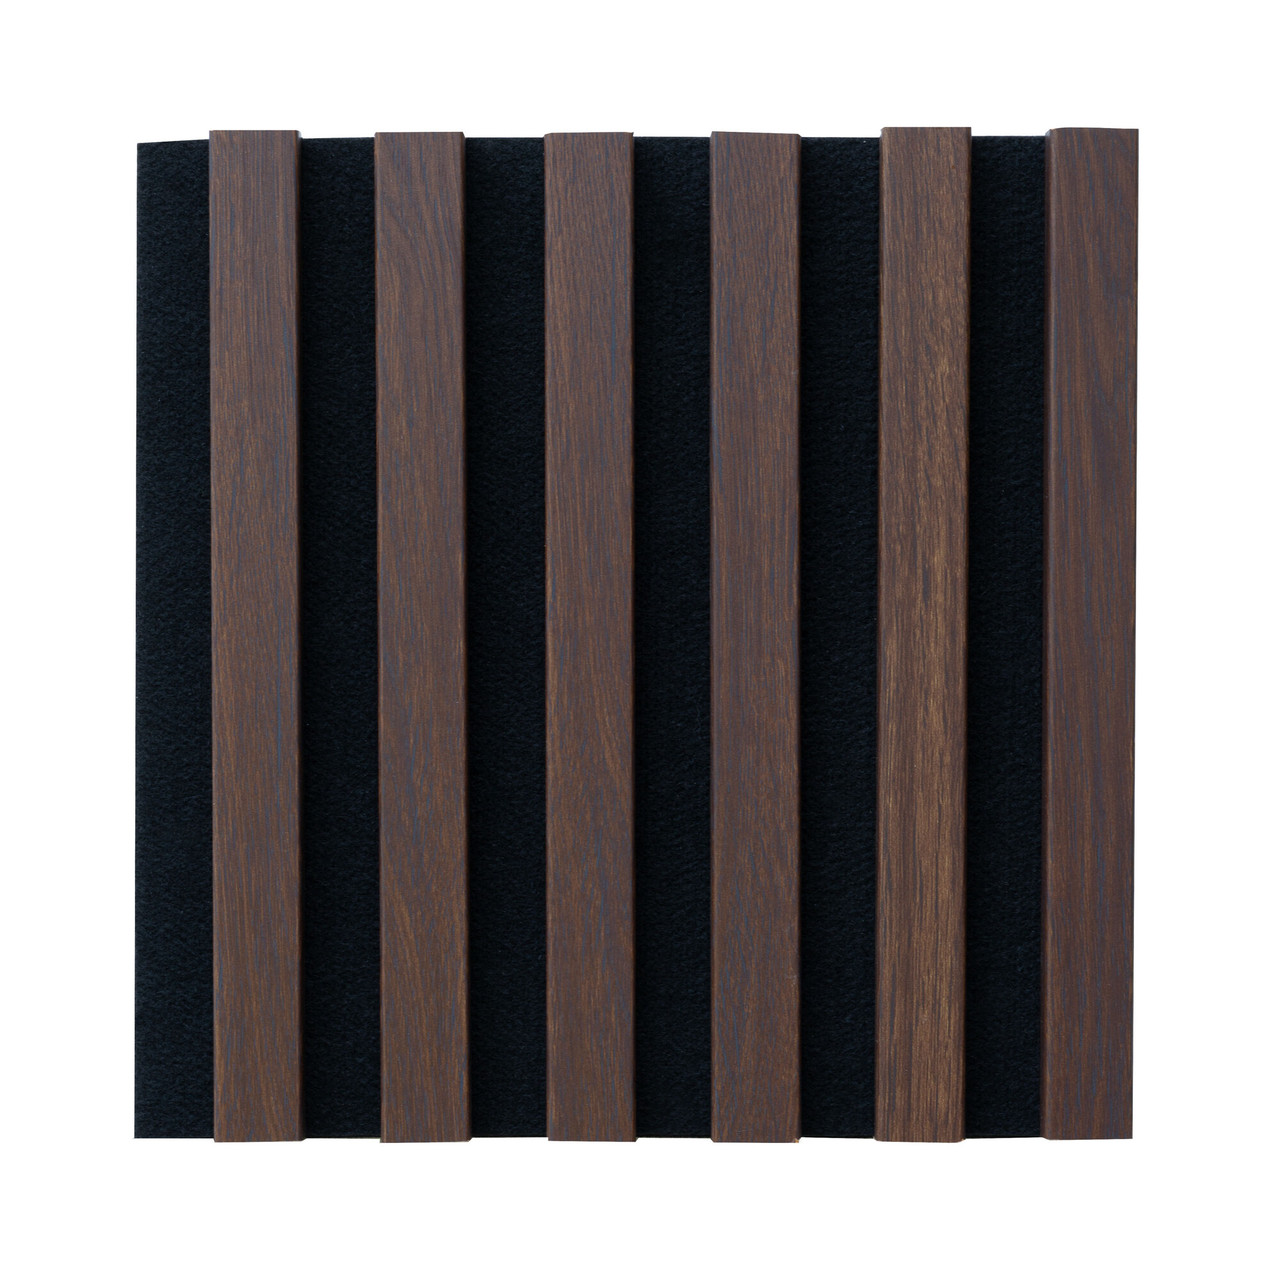 Панель МДФ акустична стінова. Колір: войлок - чорний, рейки - дуб темний. ВхШ: 300 мм x 300 мм, 1 шт.